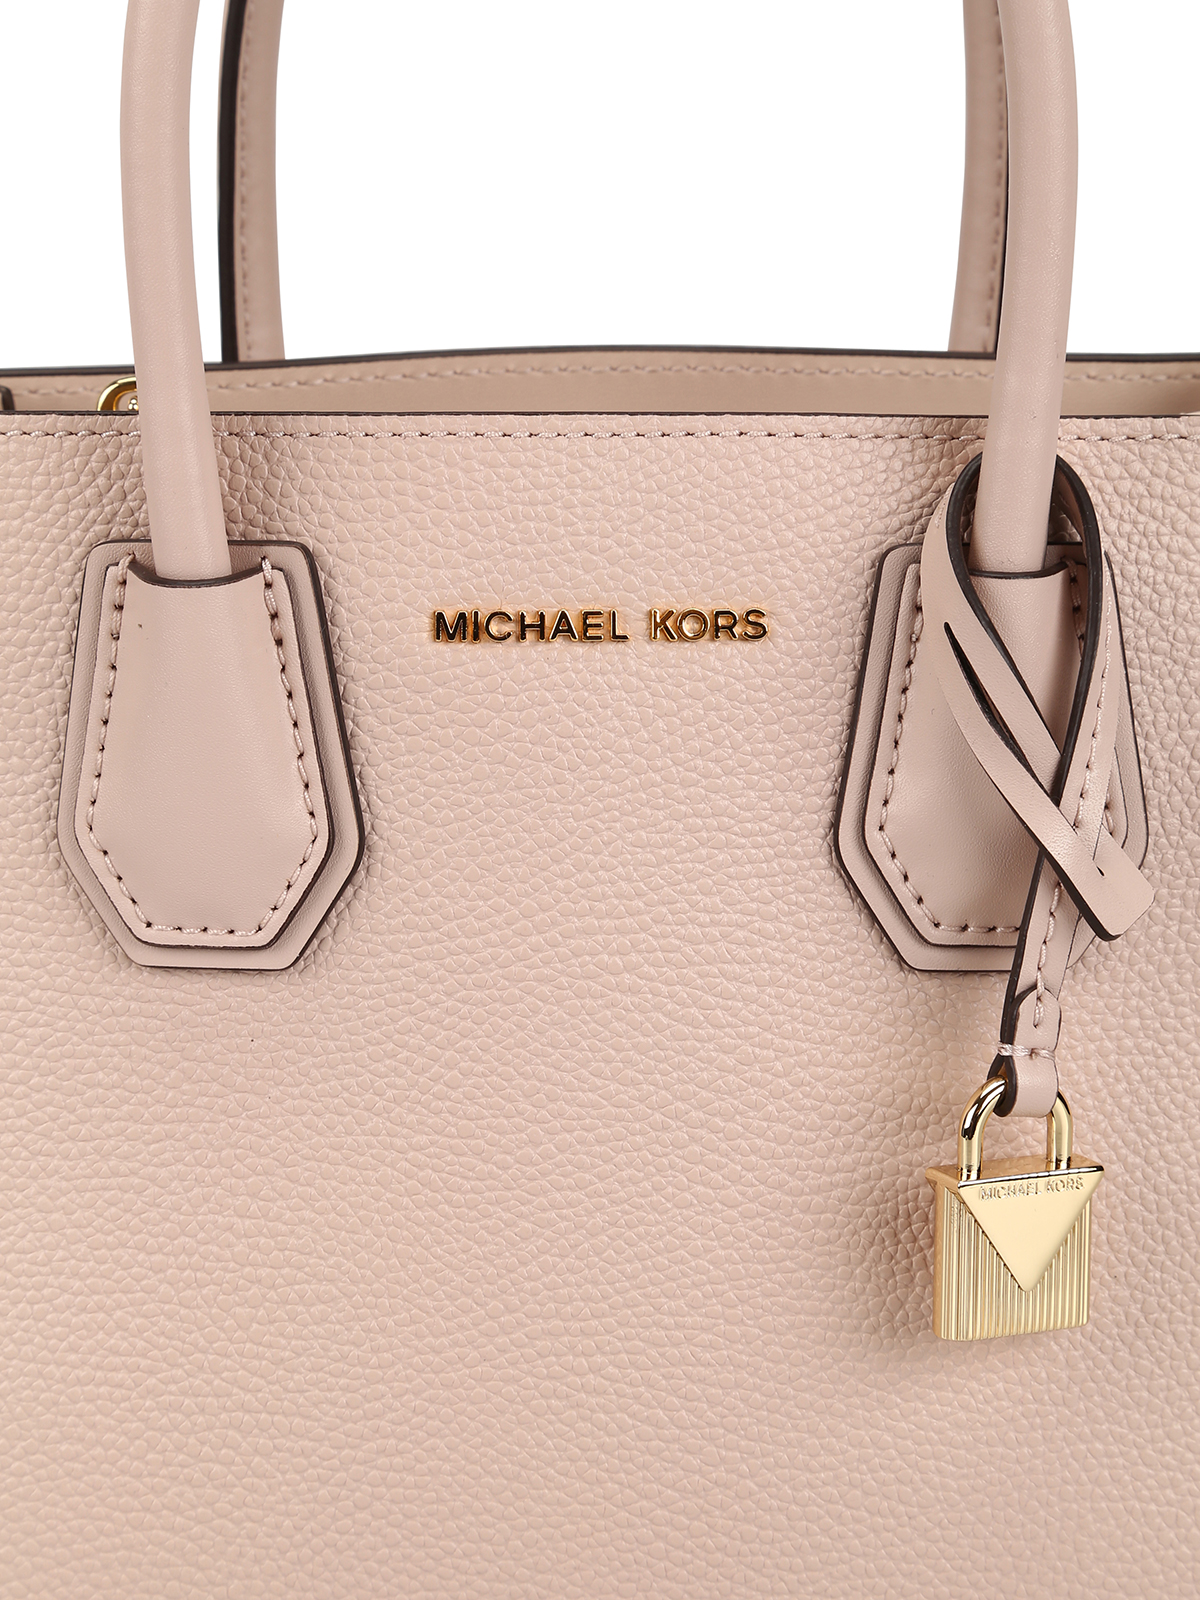 Cross body bags Michael Kors - Mercer M light pink leather bag